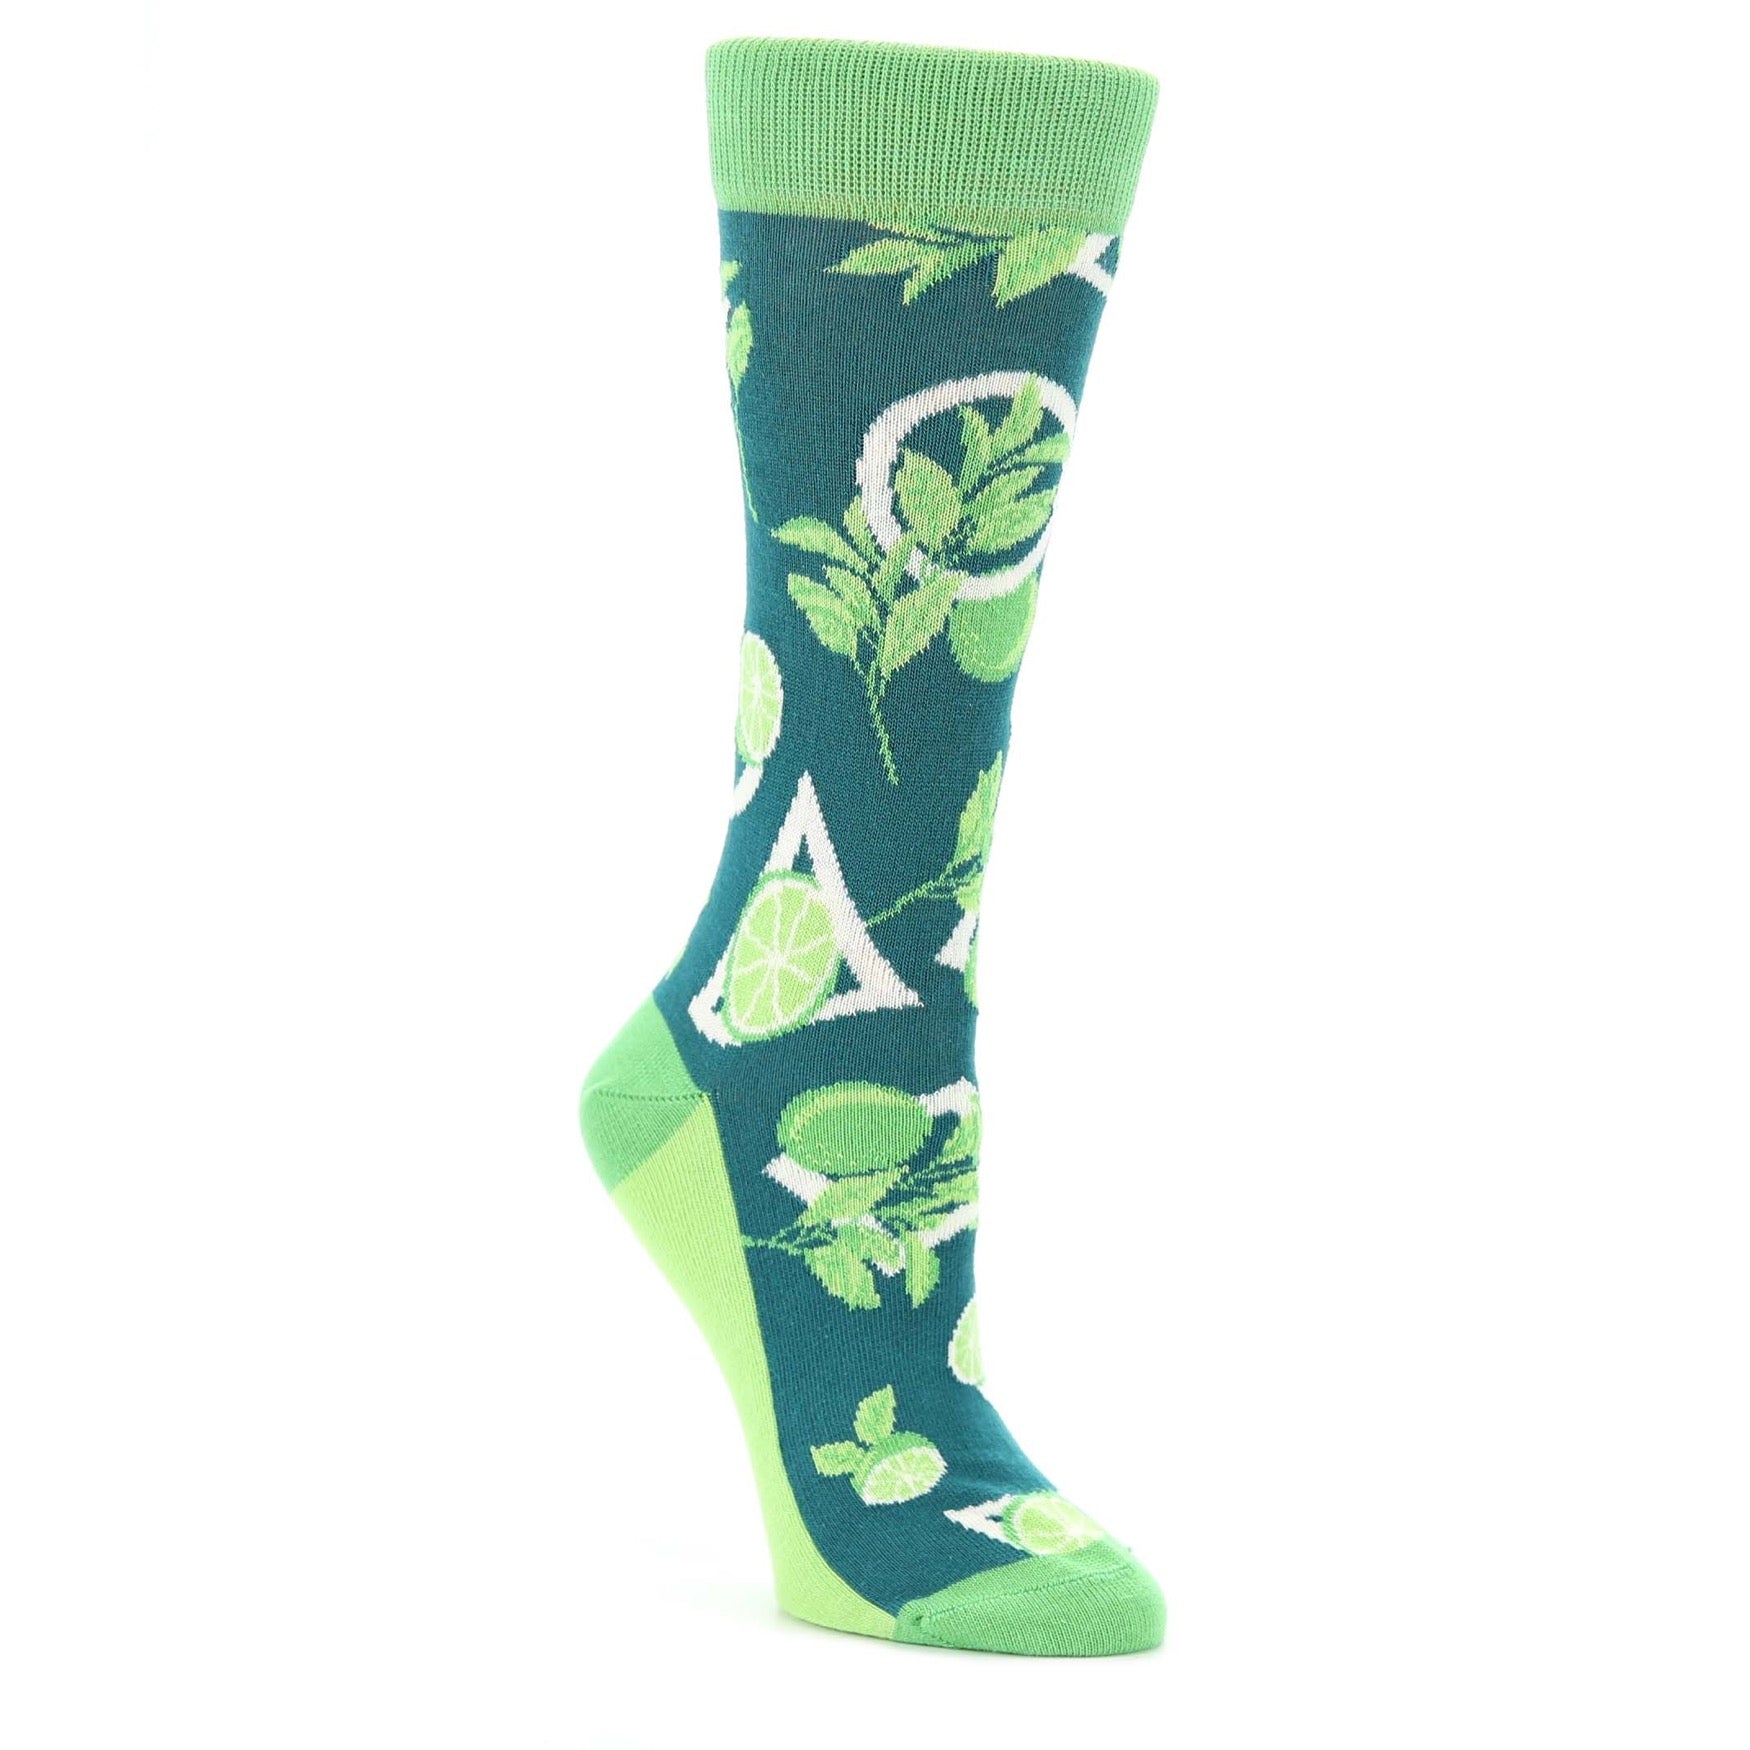 Lime Socks -  Women's Novelty Socks